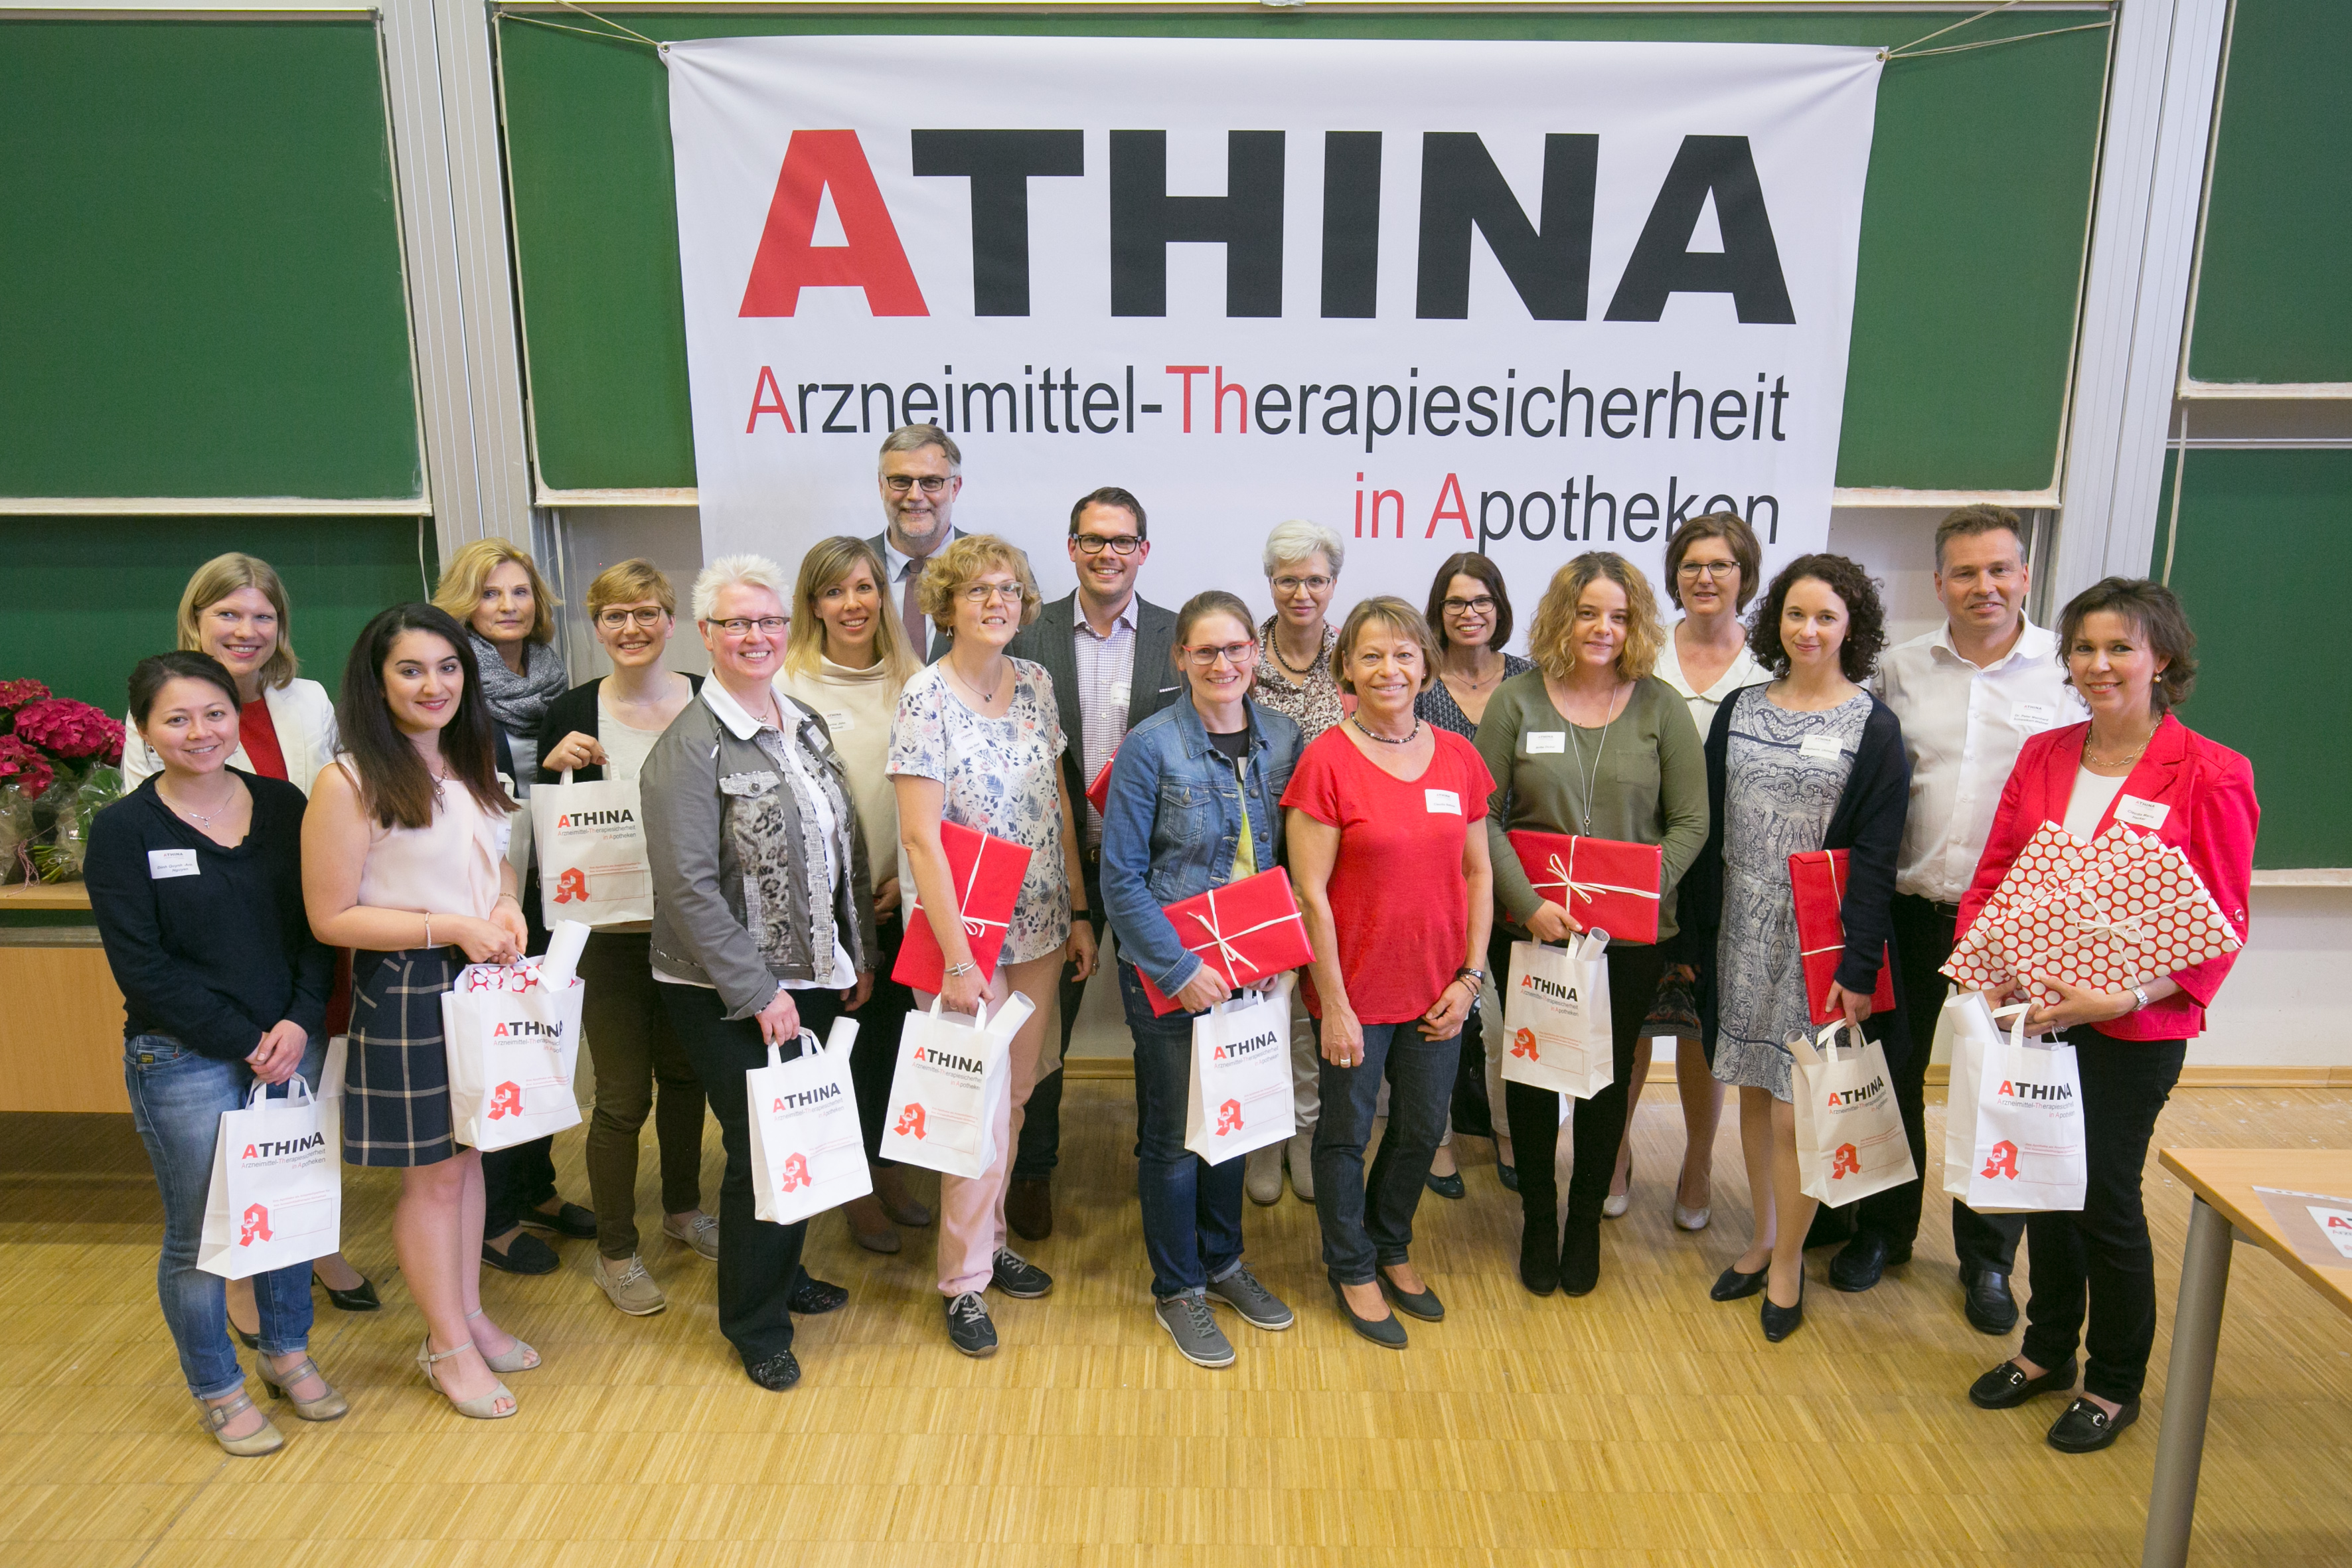 Das Foto zeigt zertifizierte ATHINA-Apotheker gemeinsam mit dem ATHINA-team der Apothekerkammer Nordrhein.